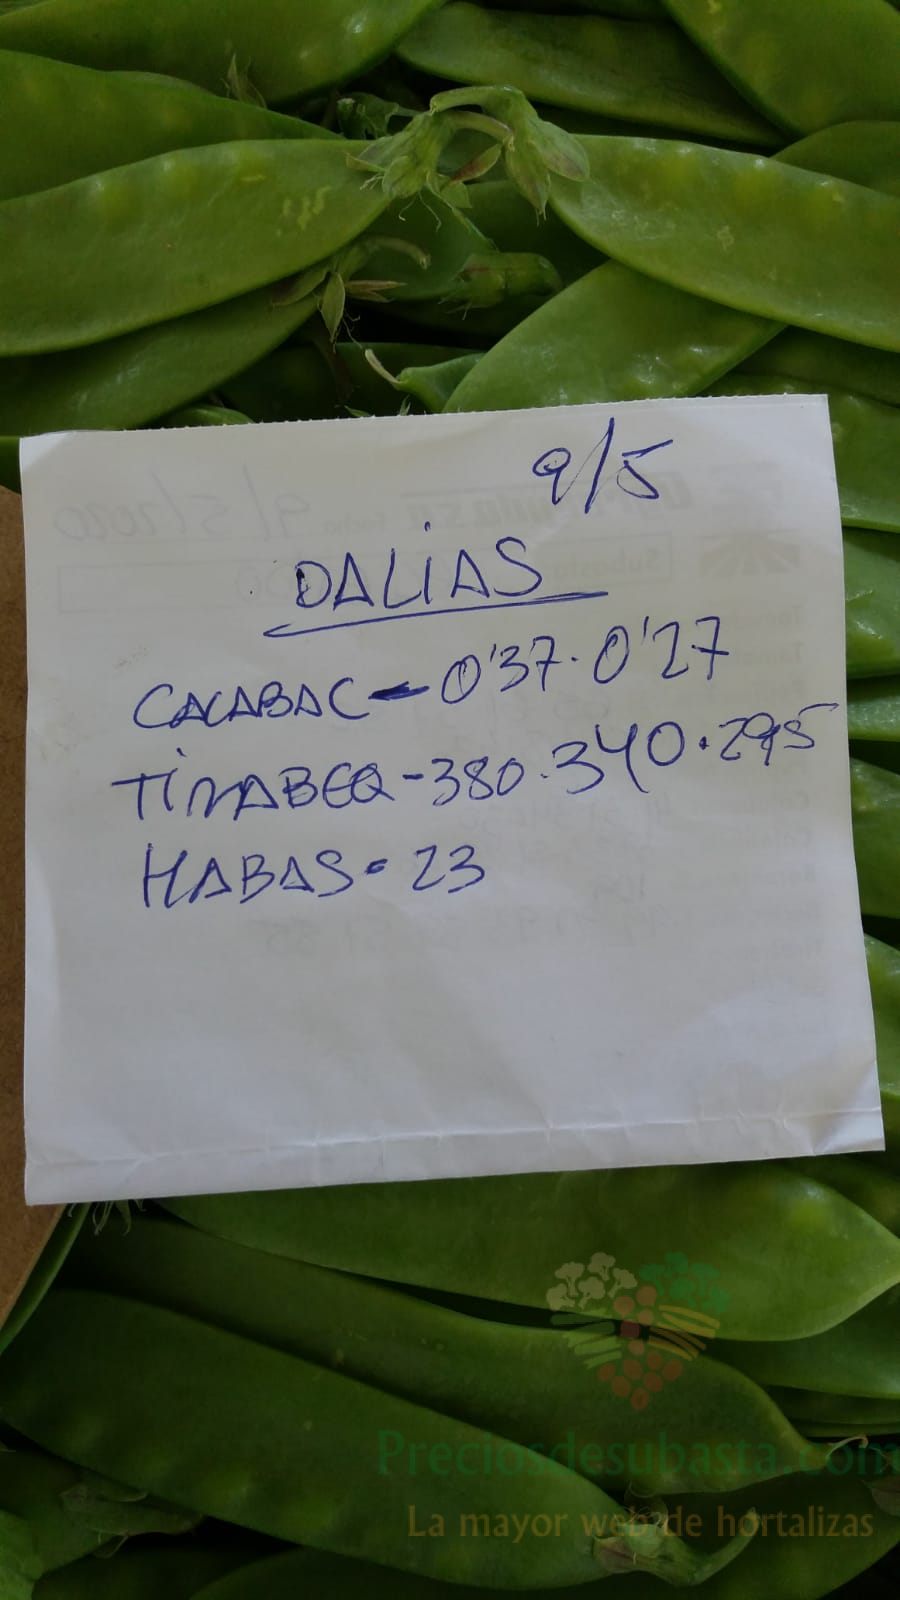 Subasta hortofrutícola AgroEjido Dalias 9 de mayo 2020